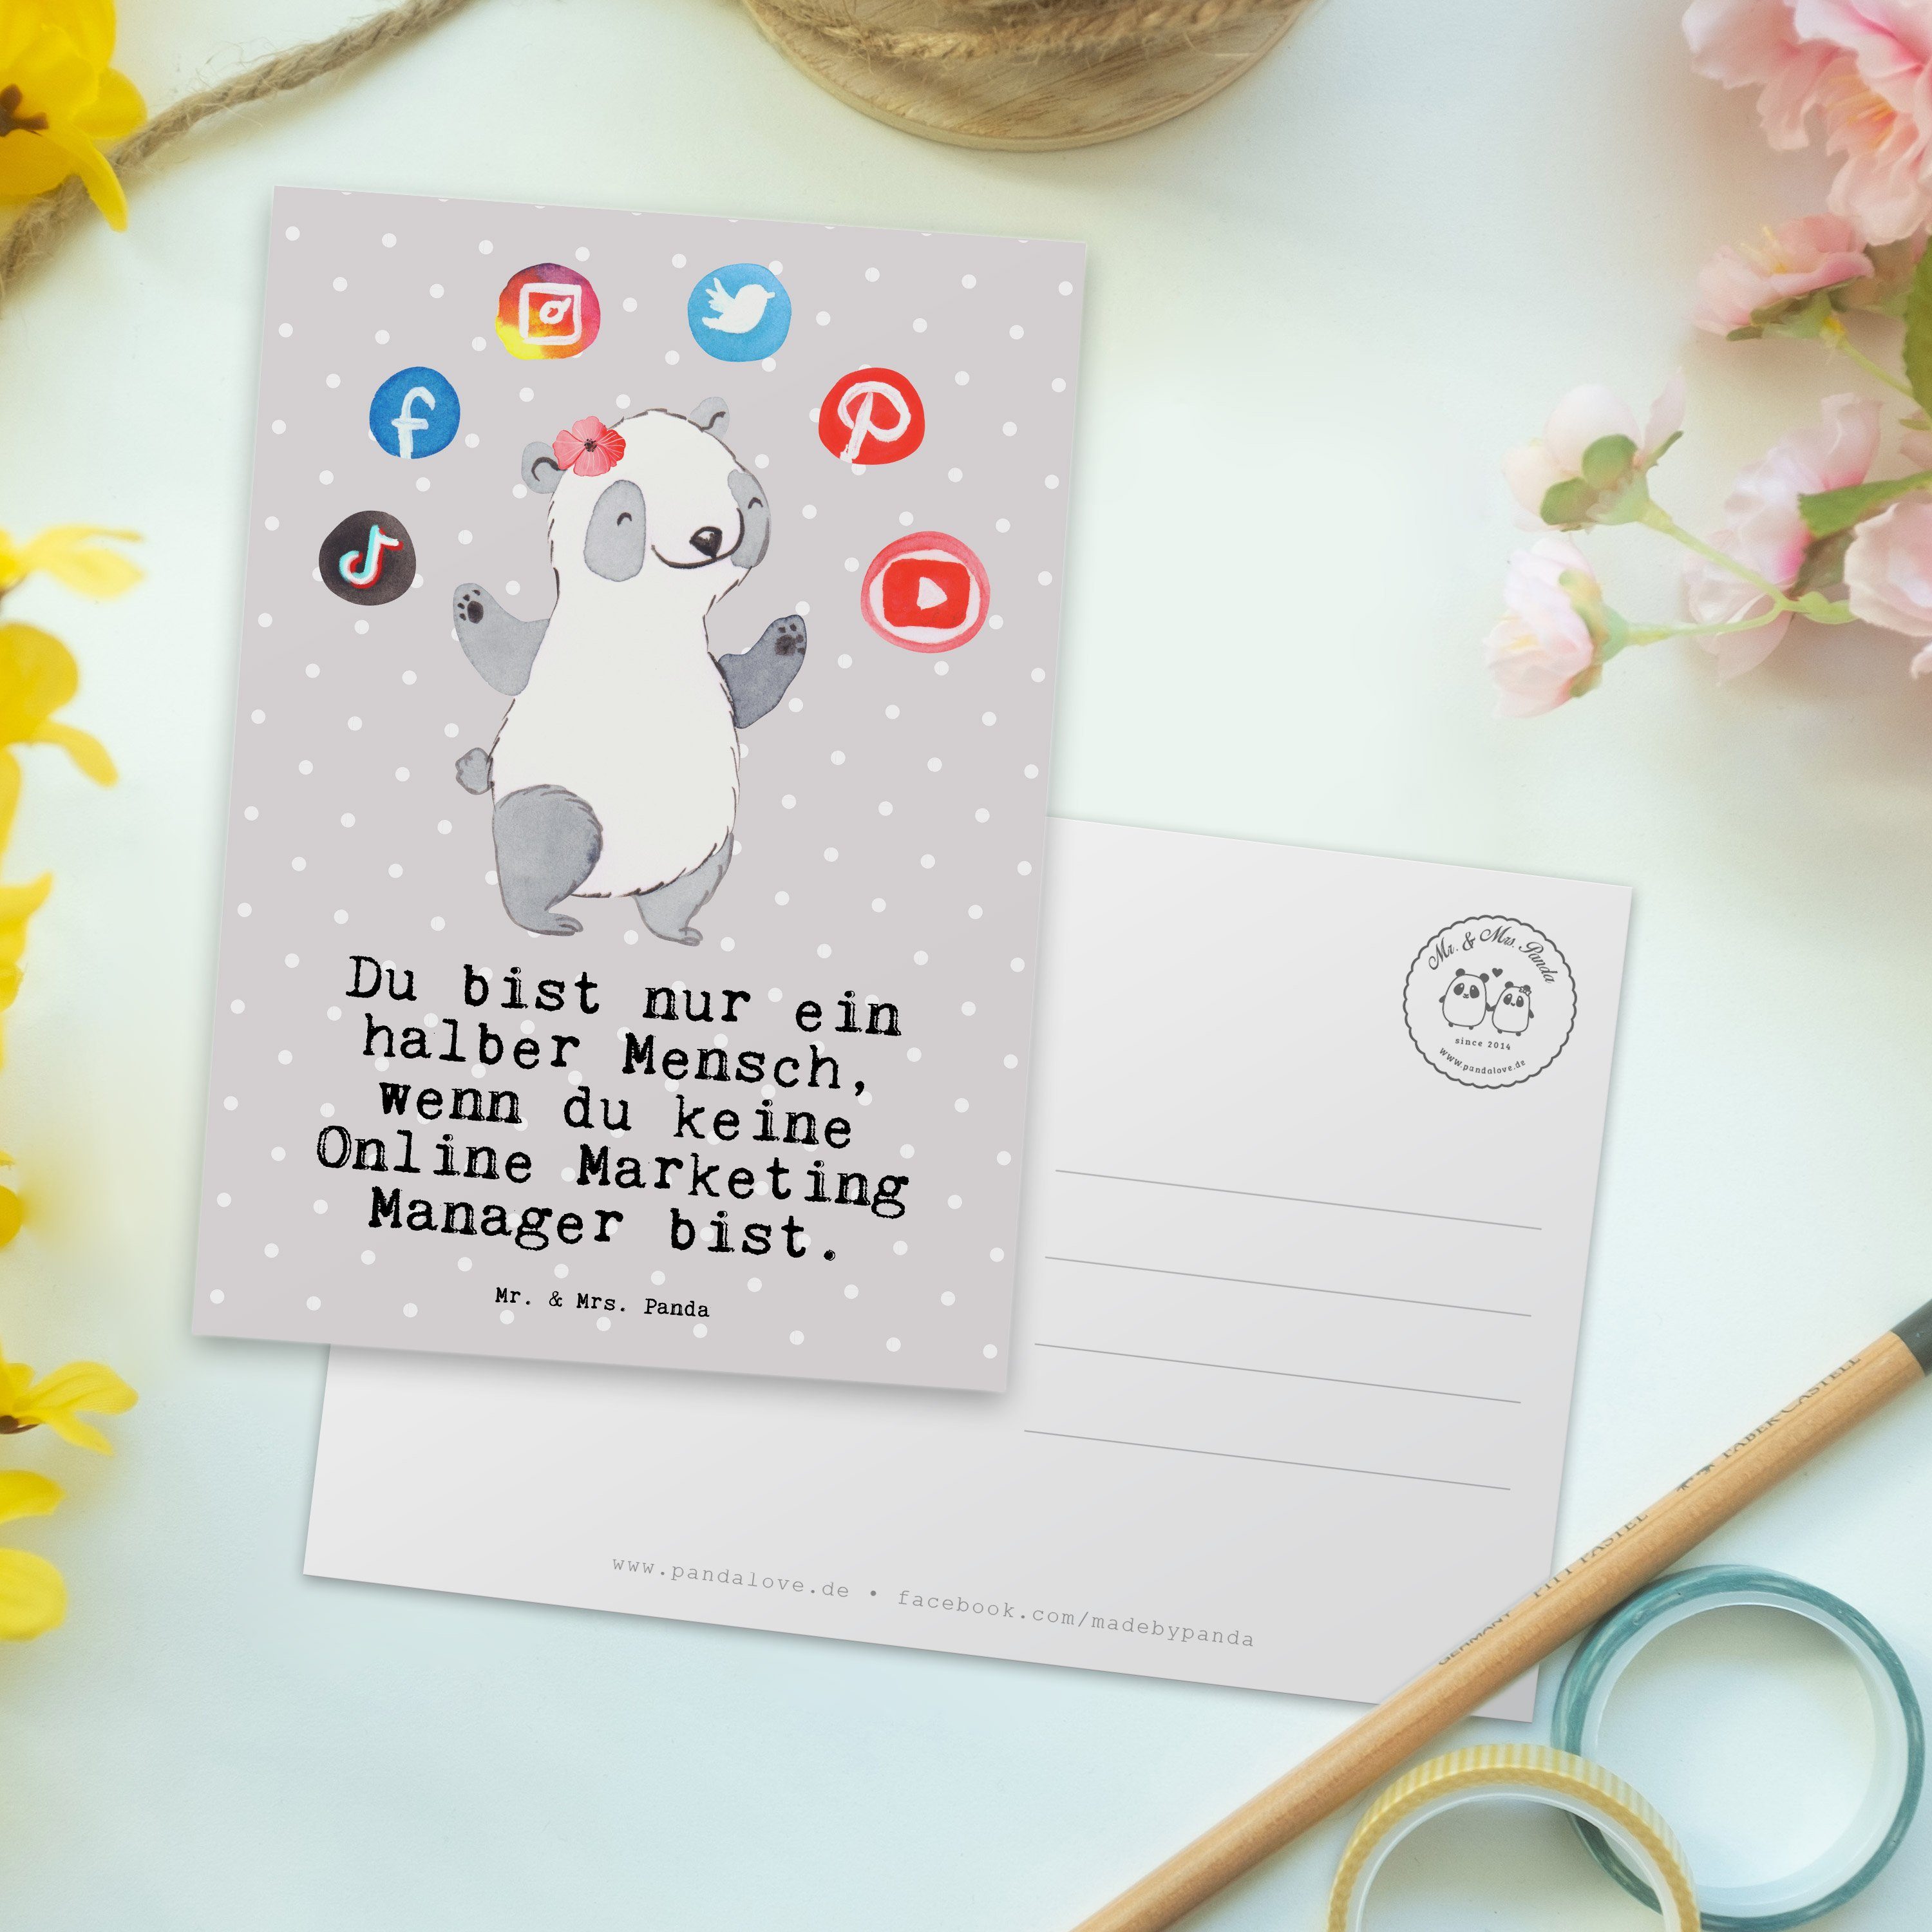 Mr. & Pastell - Mrs. Online Grau Manager mit - Marketing Panda Postkarte Geburtst Herz Geschenk